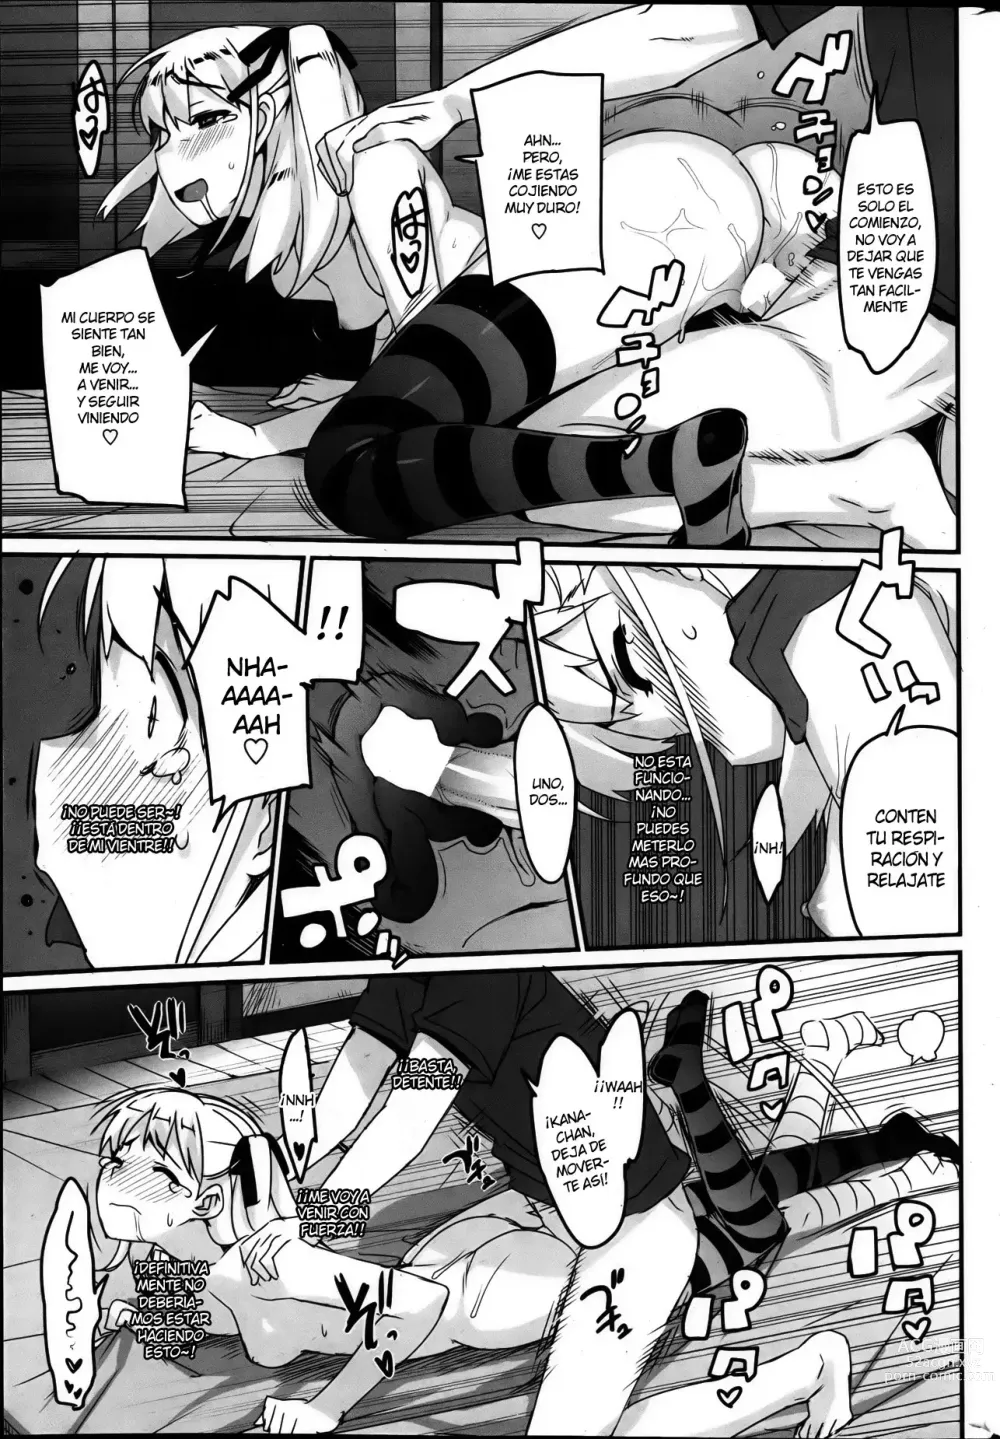 Page 135 of manga Katekano!